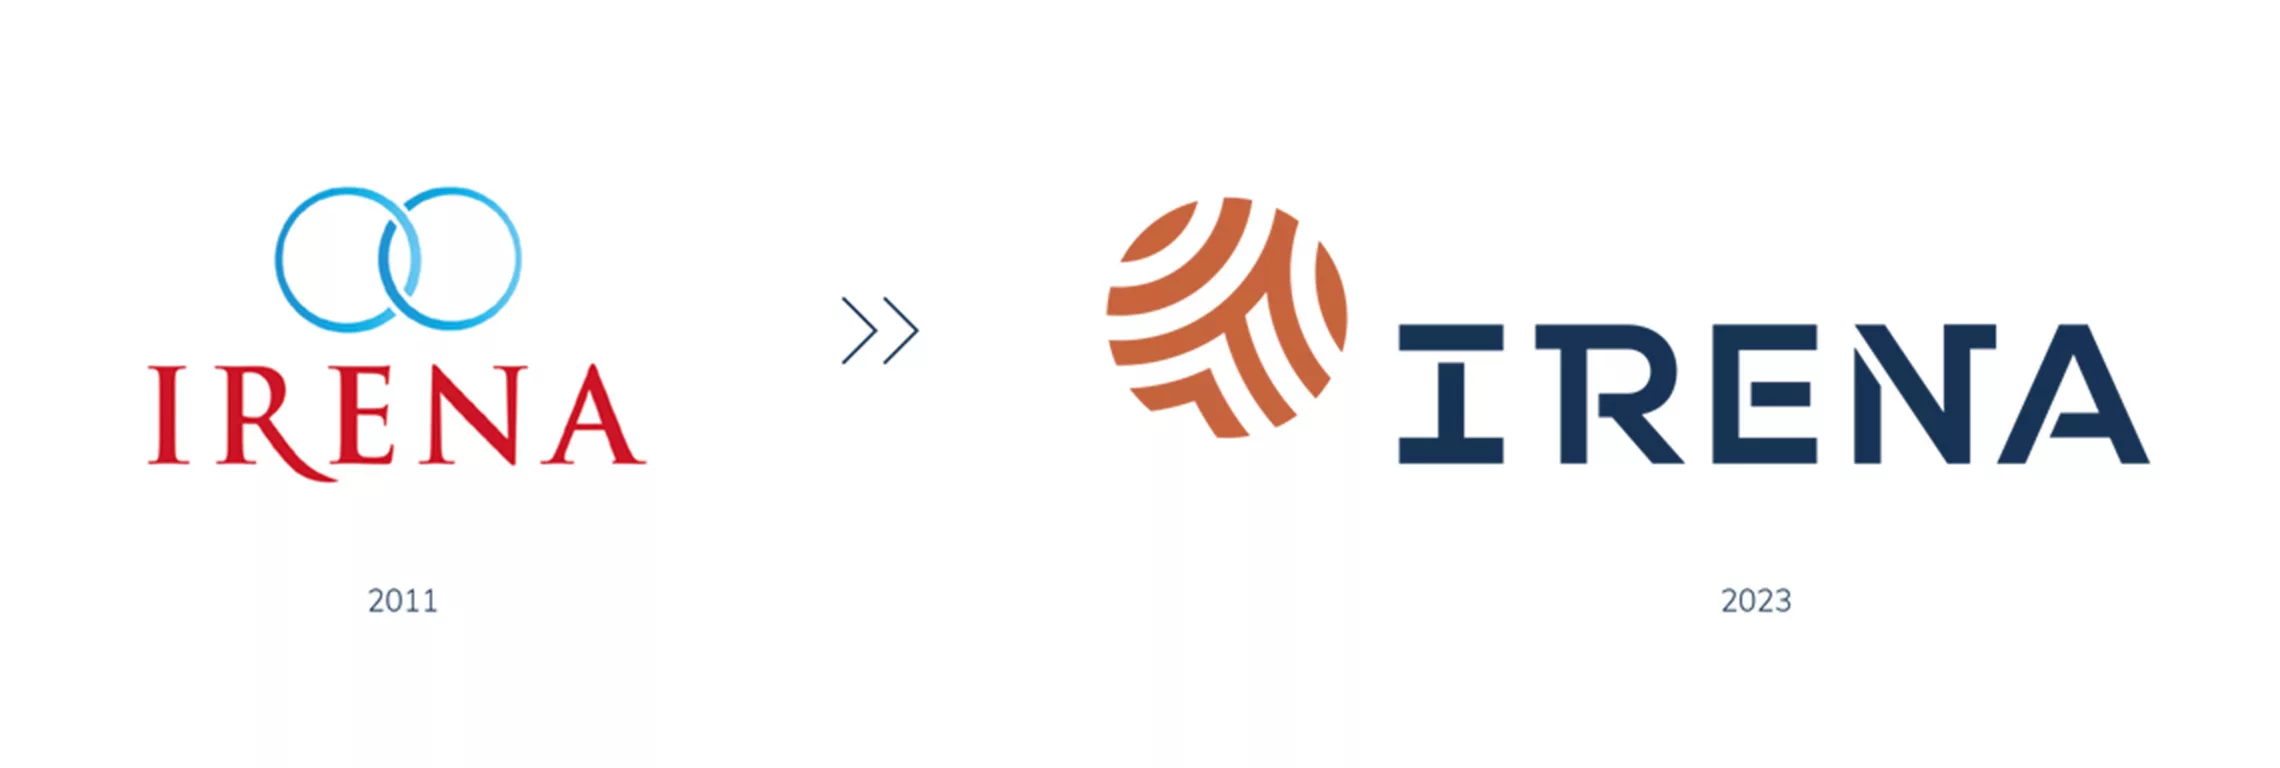 Logo Irena ancien et nouveau